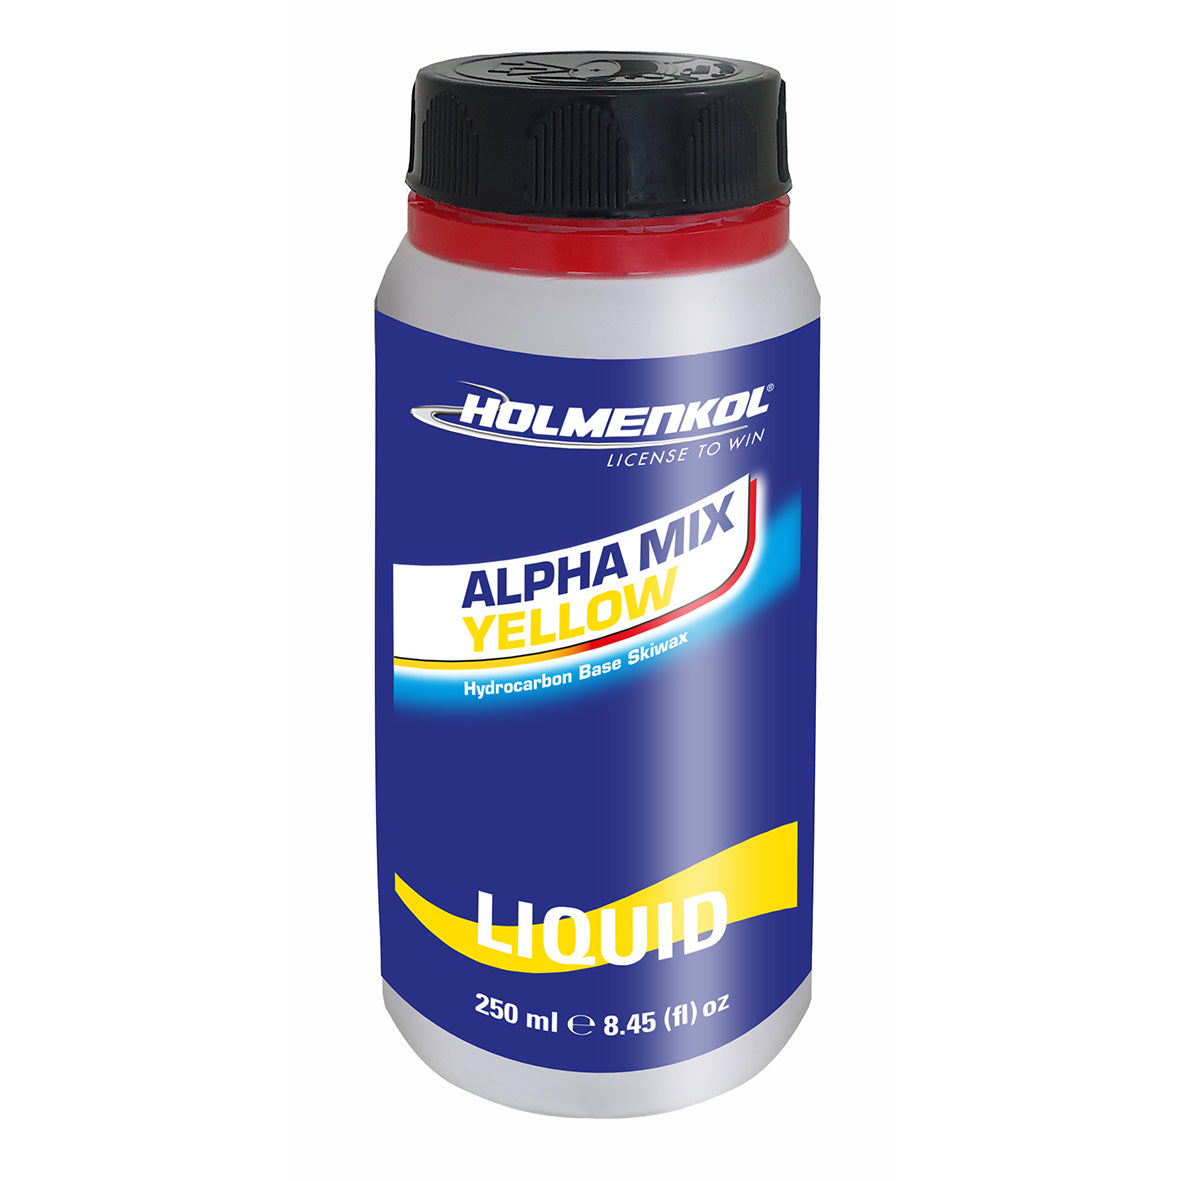 Holmenkol Alpha Mix Yellow liquid  250ml